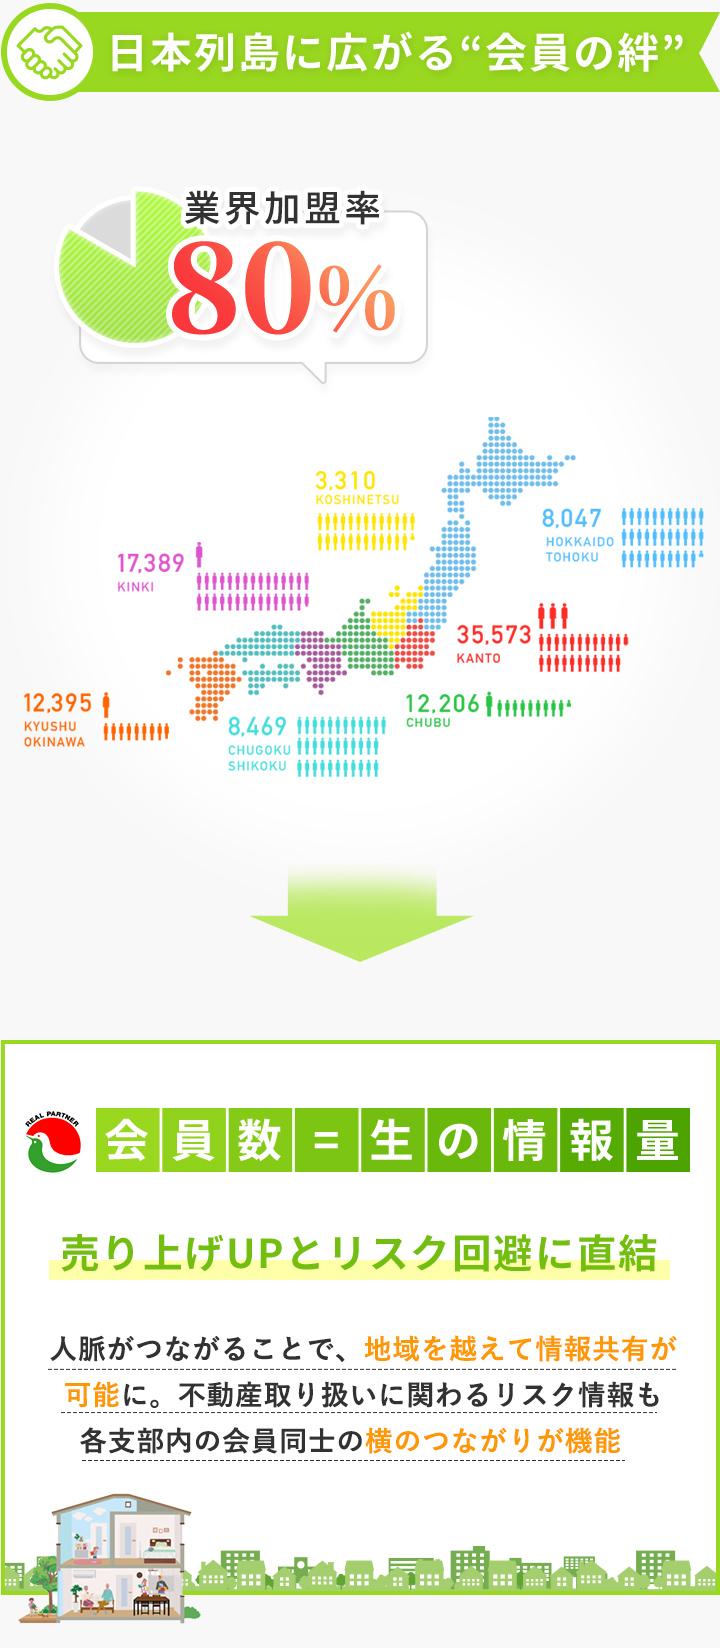 日本列島に広がる会員の絆 業界加入率80%